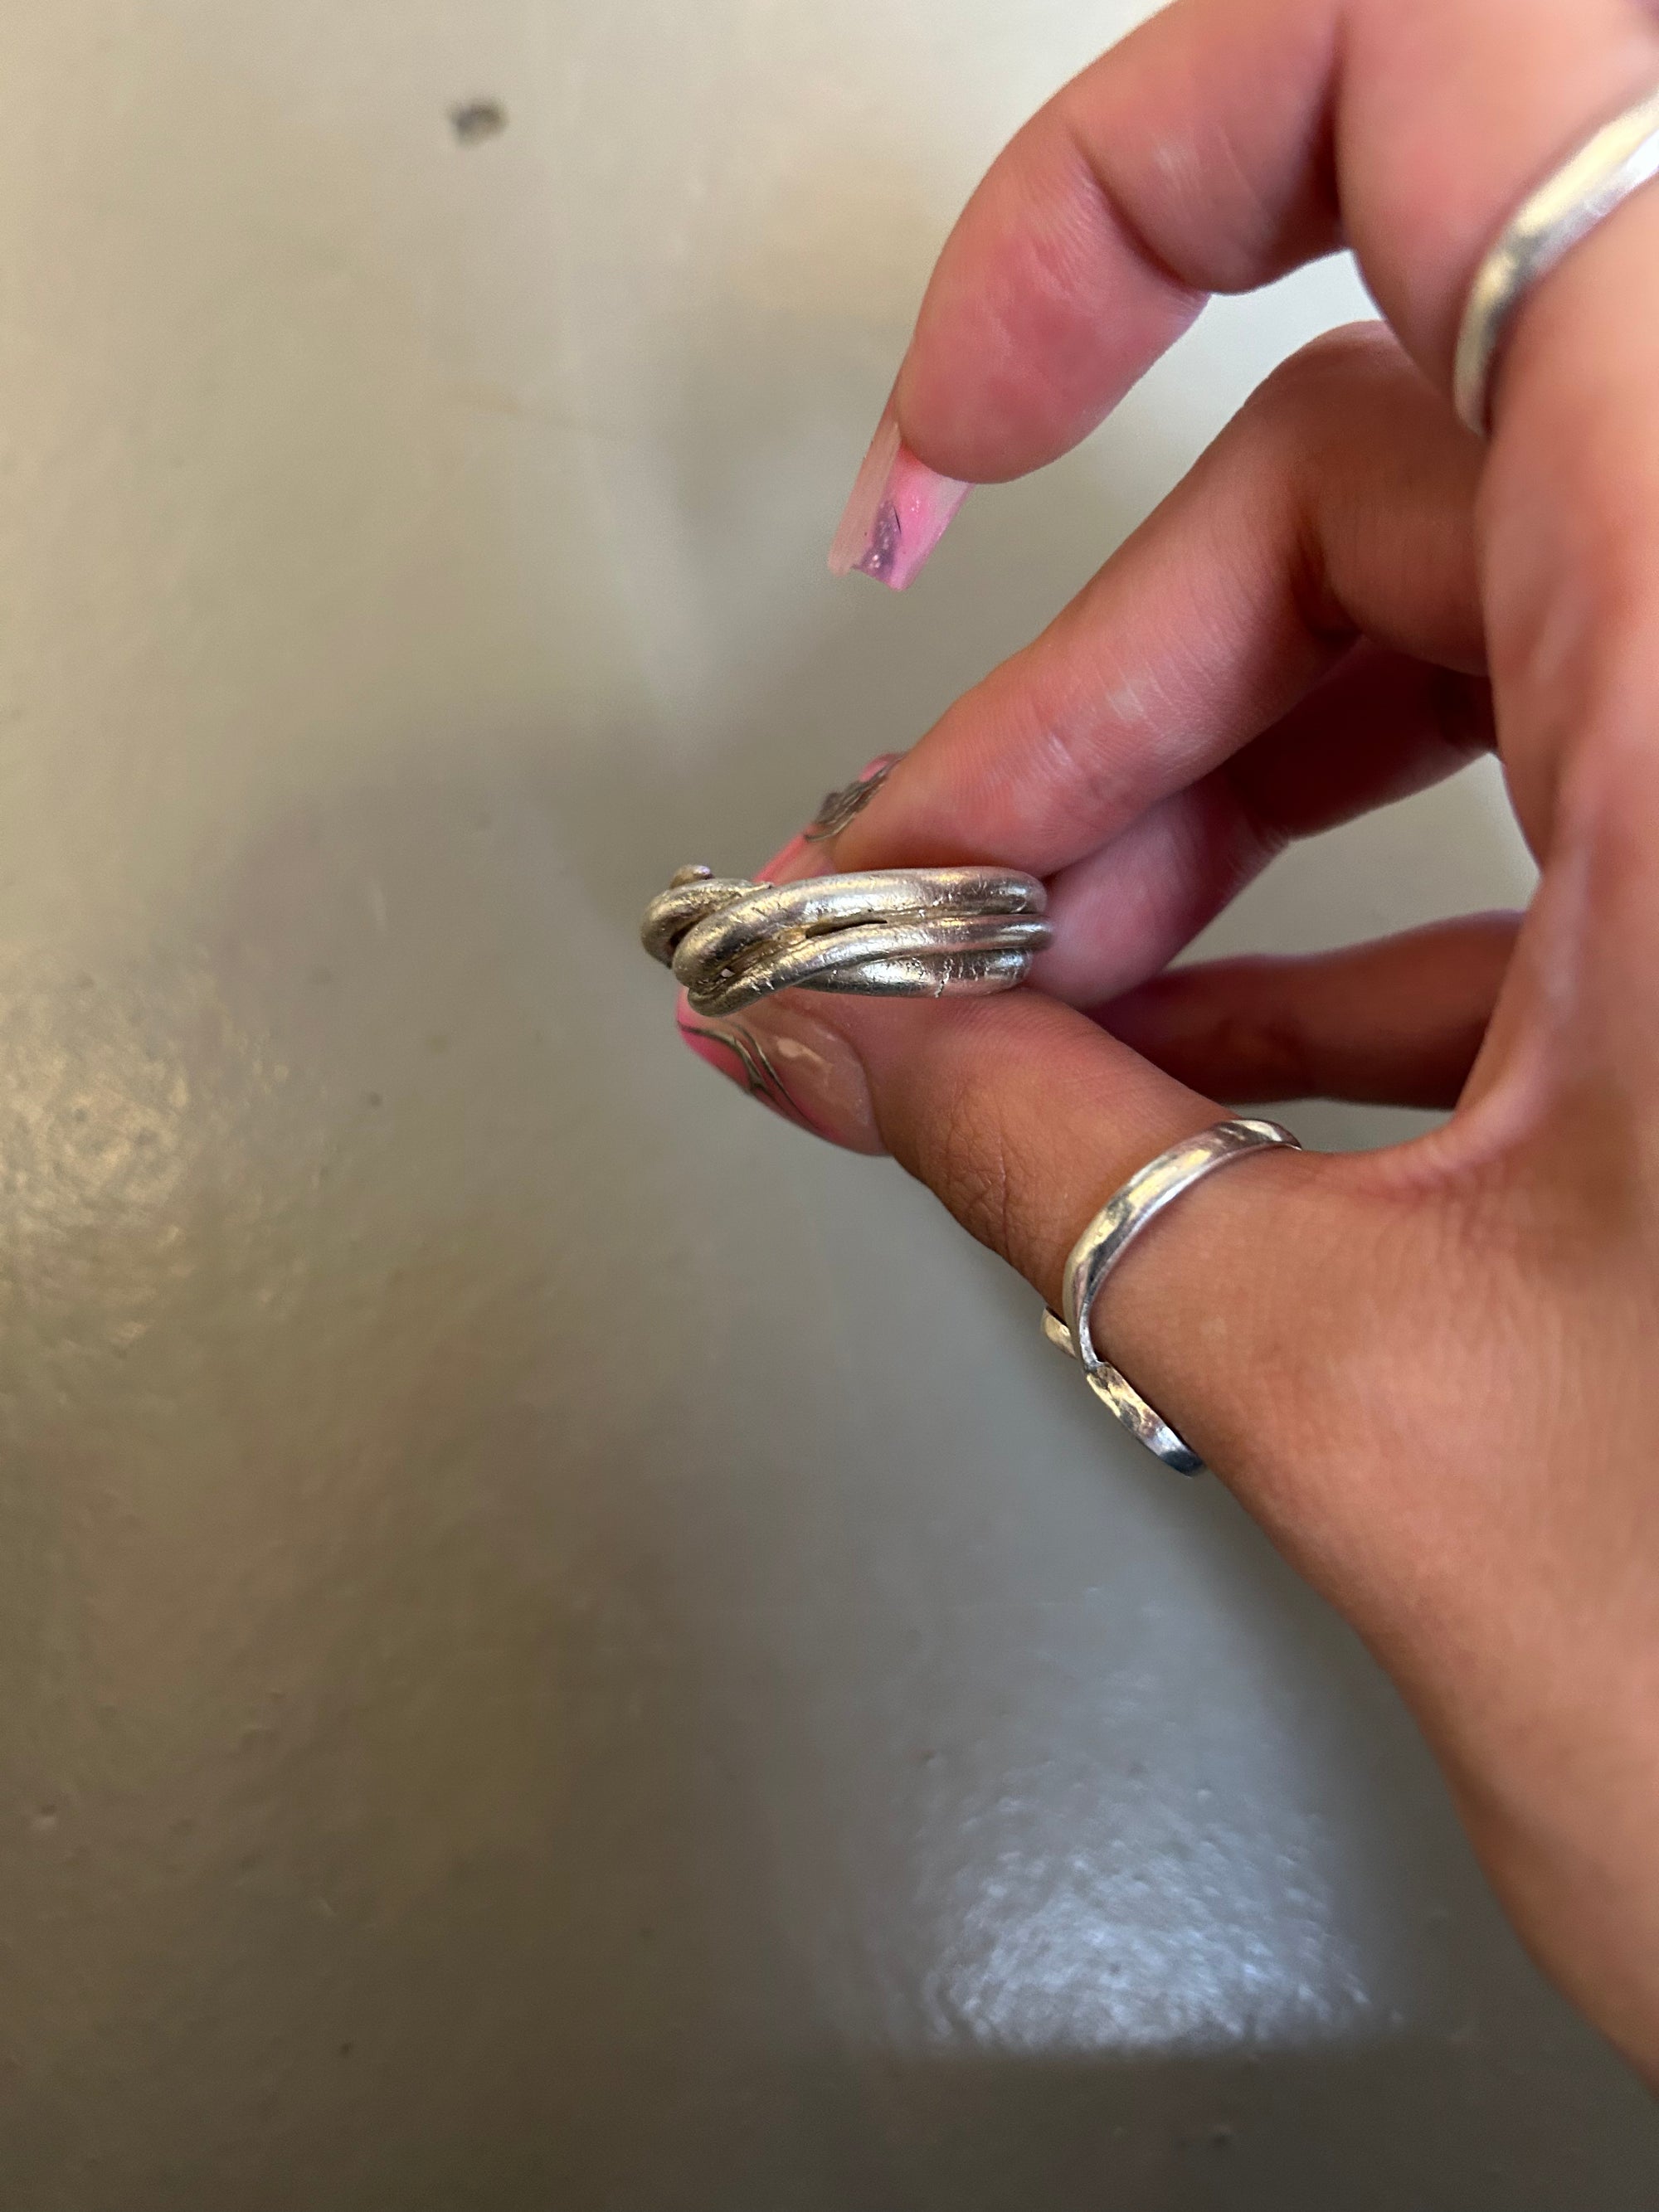 Produktbild von ringsbyclausen ring „Twisted“ auf grauem boden 